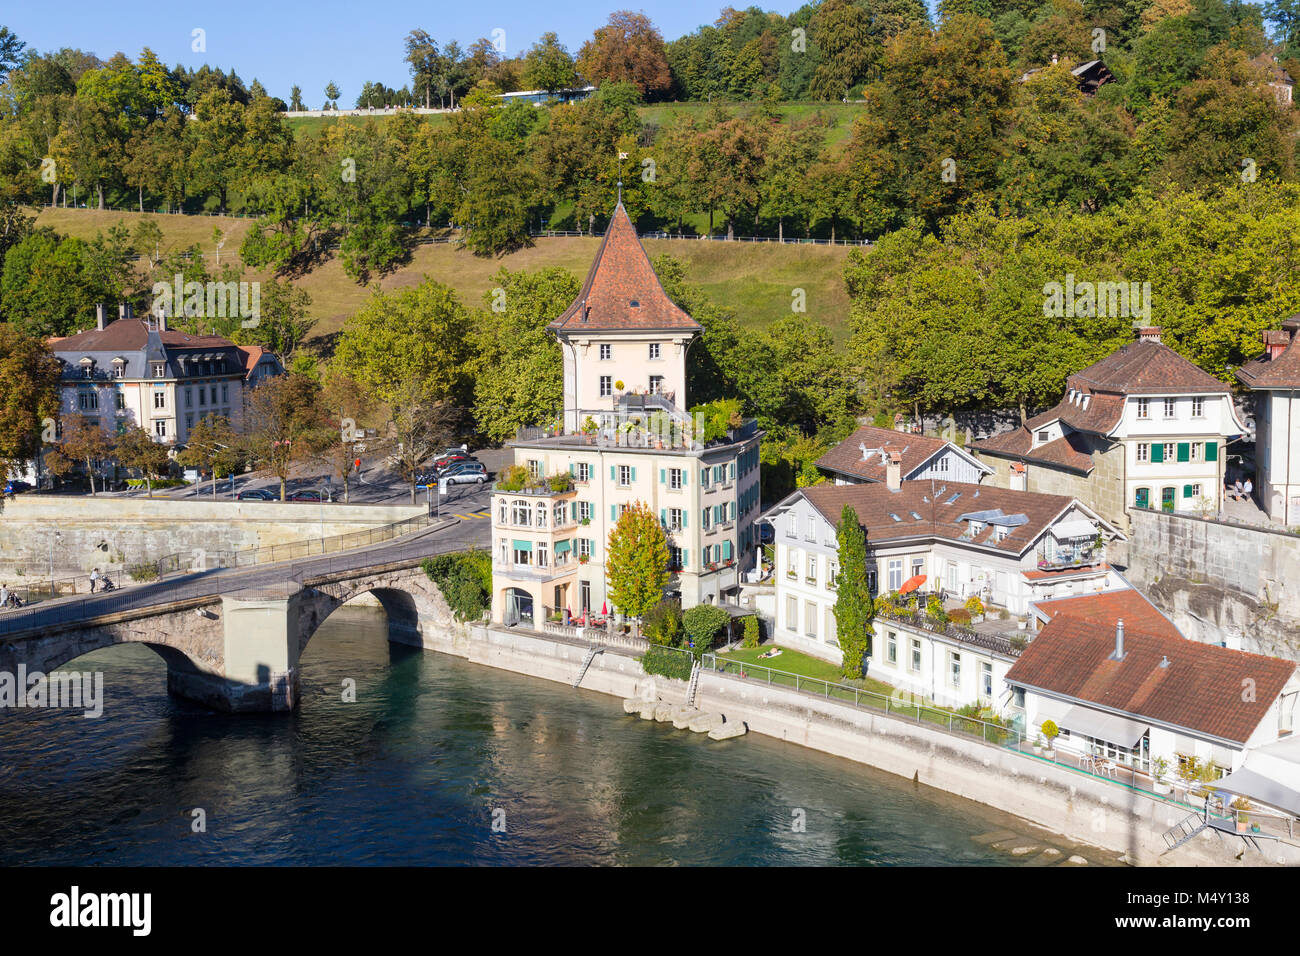 City of Bern in Switzerland Stock Photo